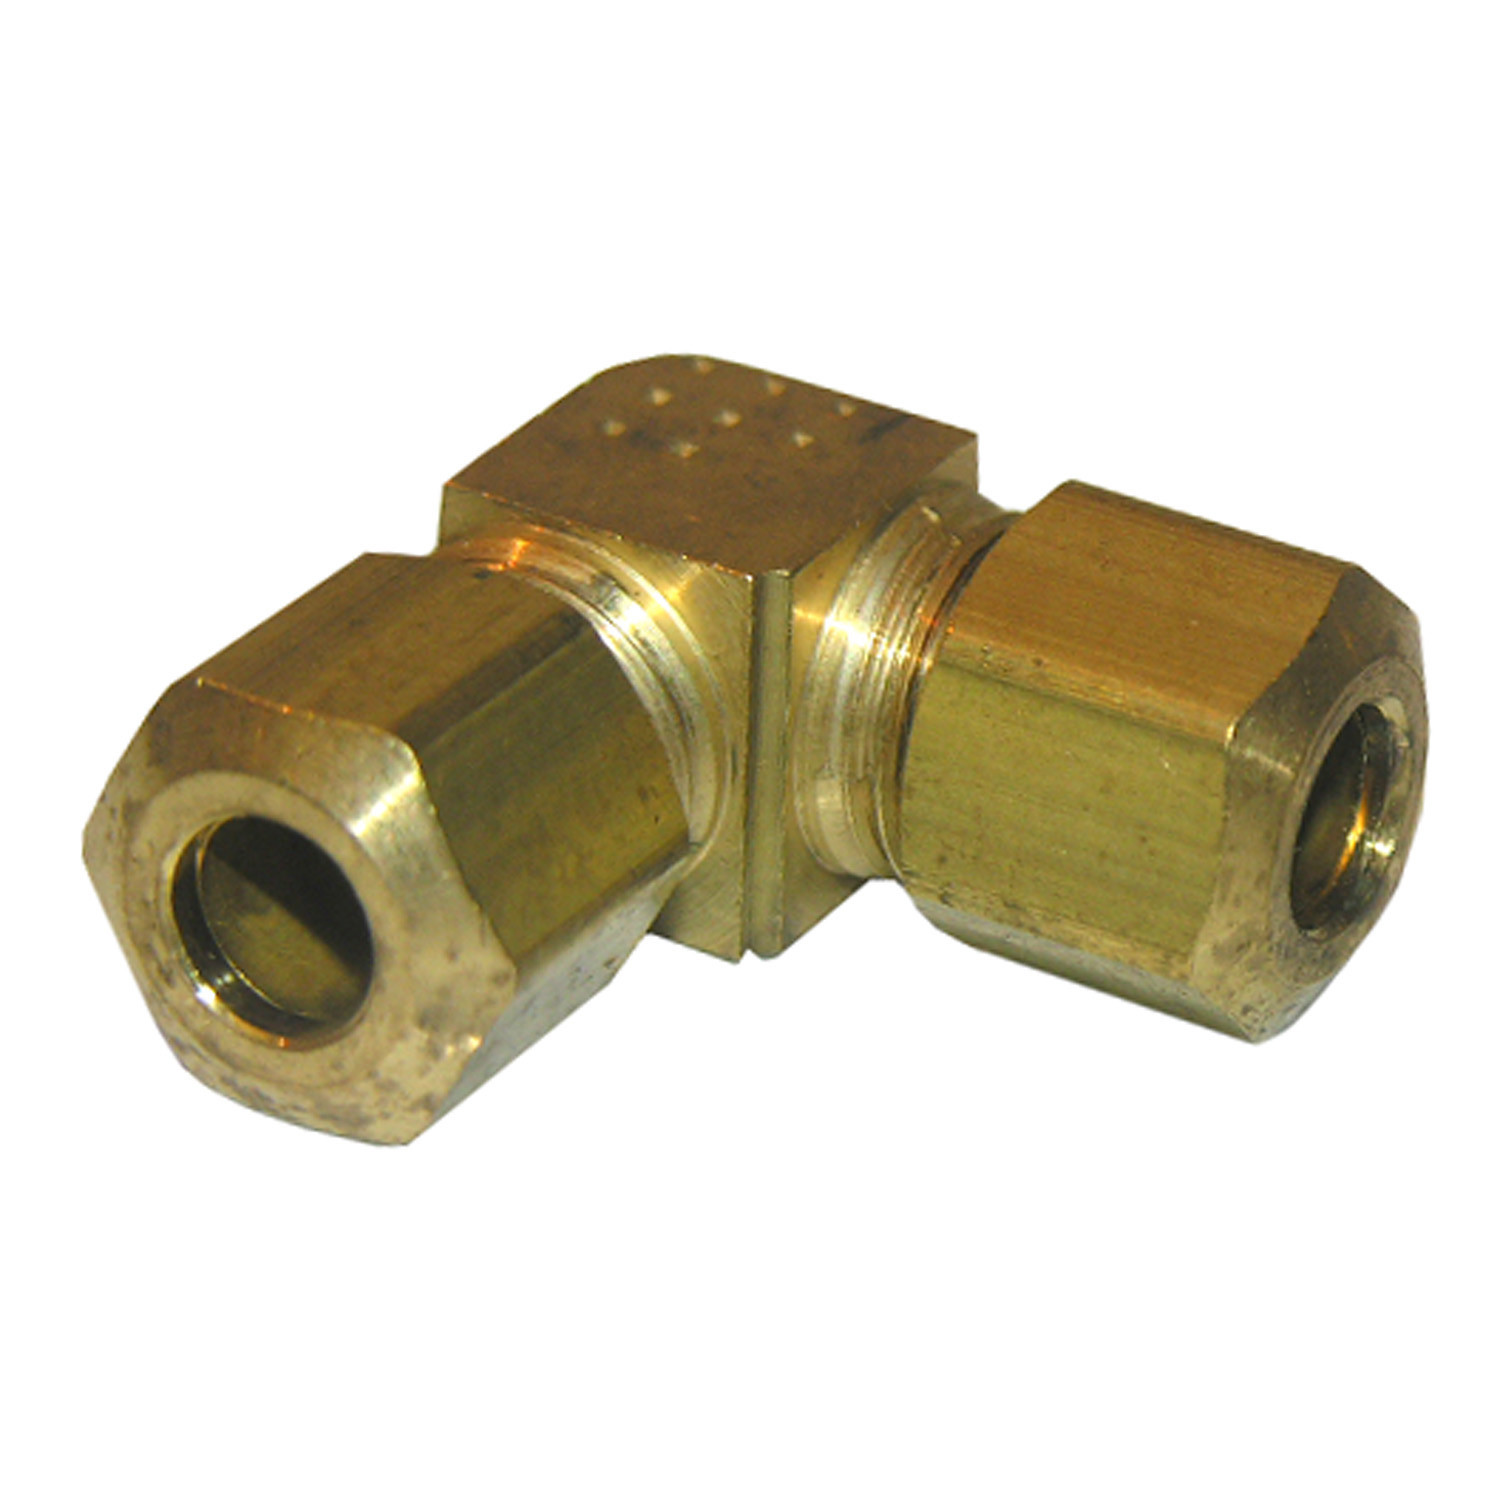 17-6511 Pipe Elbow, 1/4 in, Compression, 90 deg Angle, Brass, 150 psi Pressure